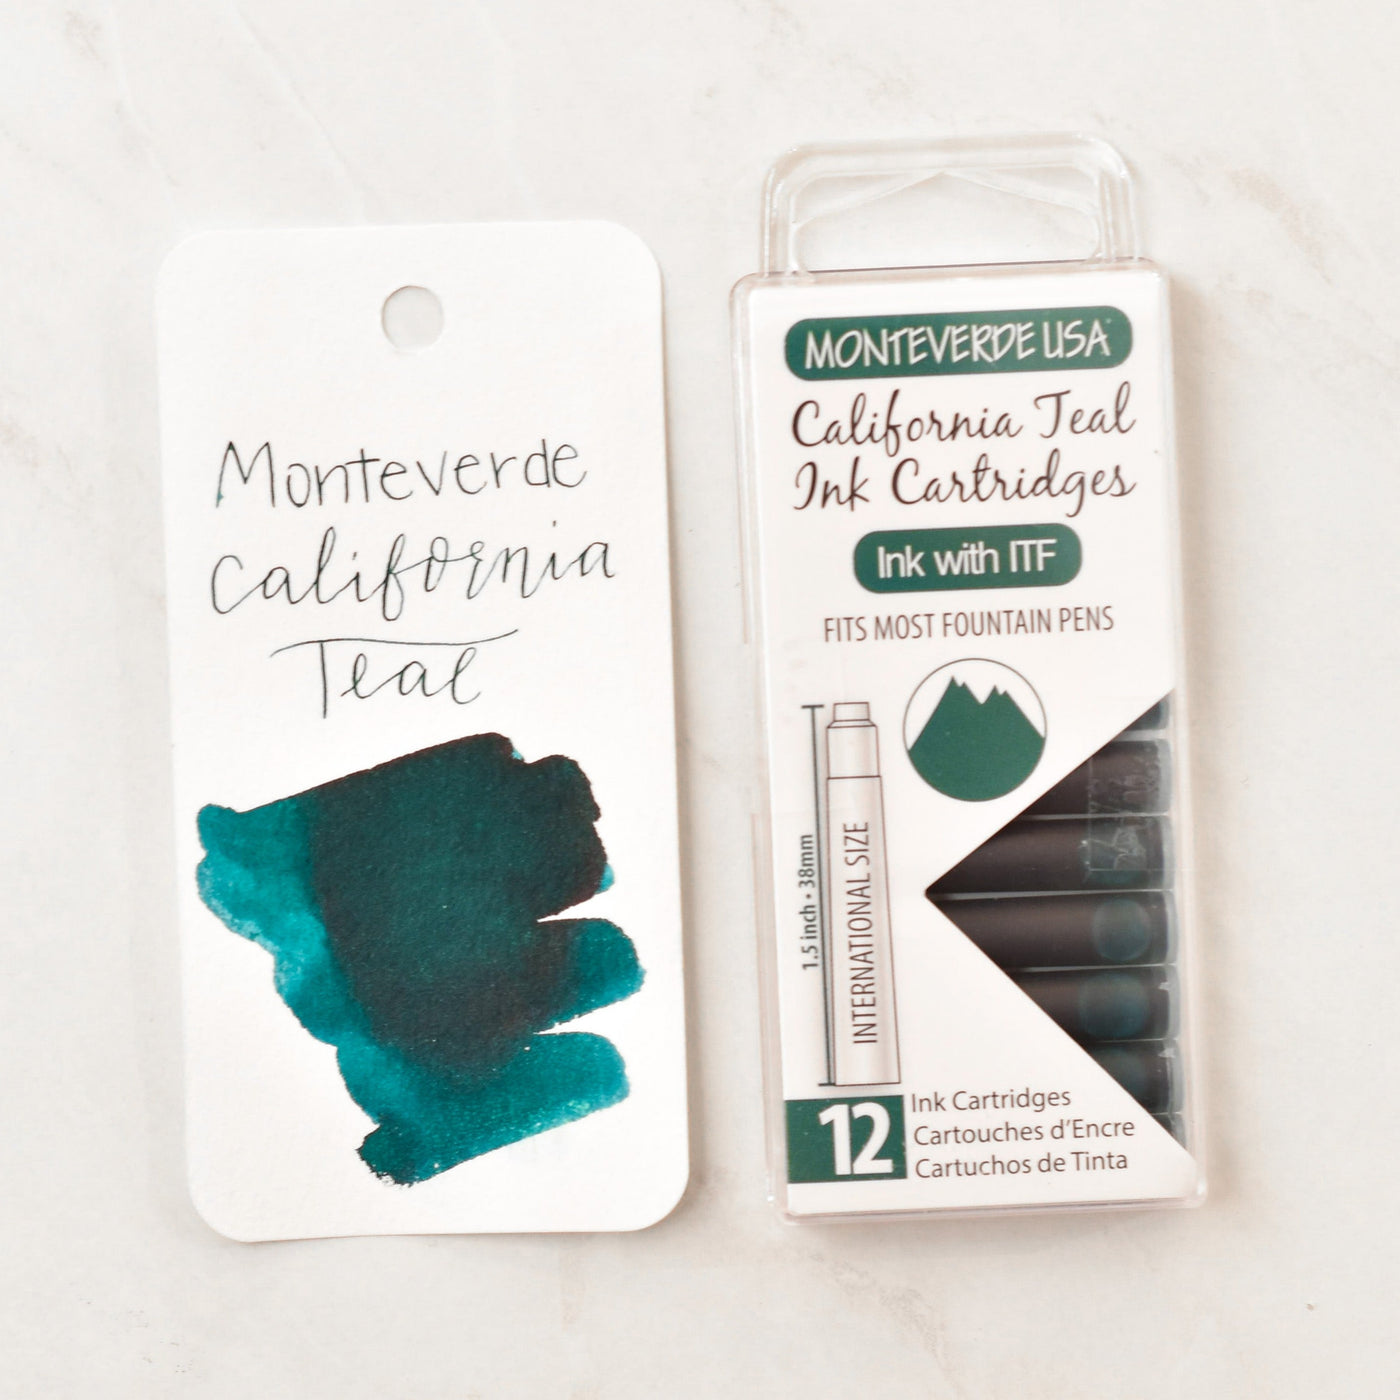 Monteverde California Teal Ink Cartridges